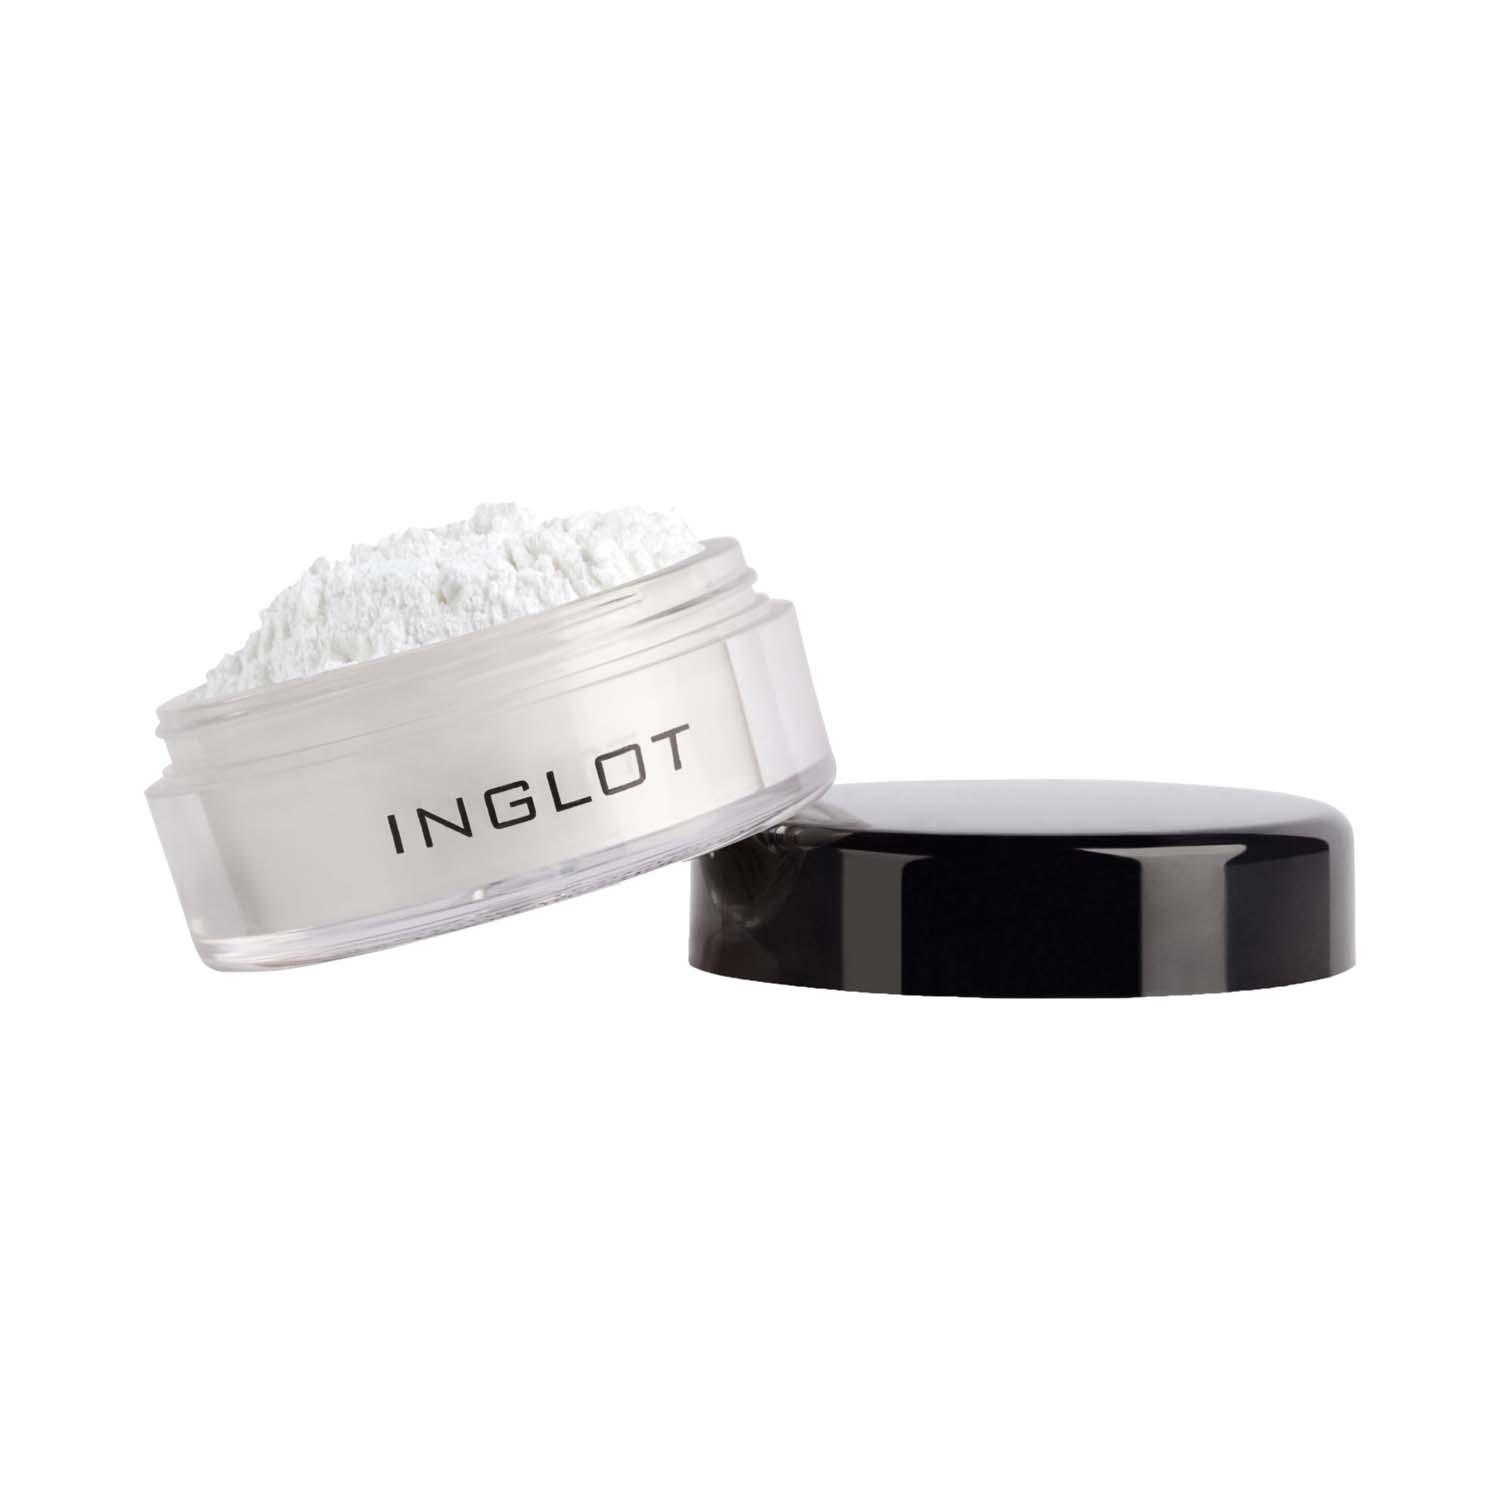 INGLOT | INGLOT Translucent Loose Setting Powder - 216 (1.5 g)